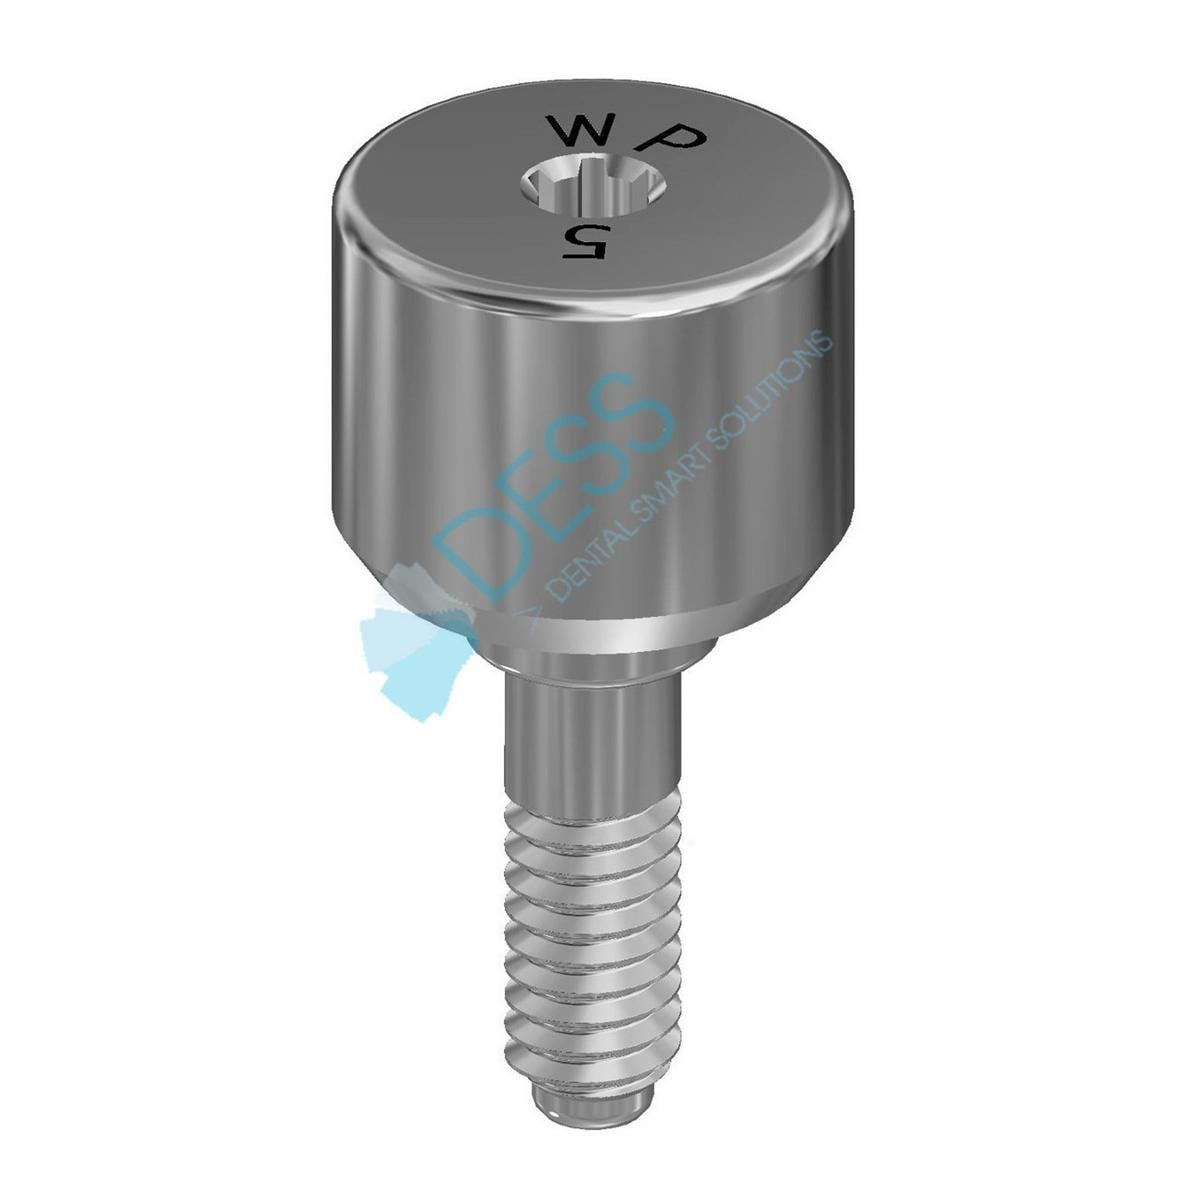 Gingivaformer - kompatibel mit Nobel Replace Select™ - WP Ø 5,1 mm, Höhe 5,0 mm